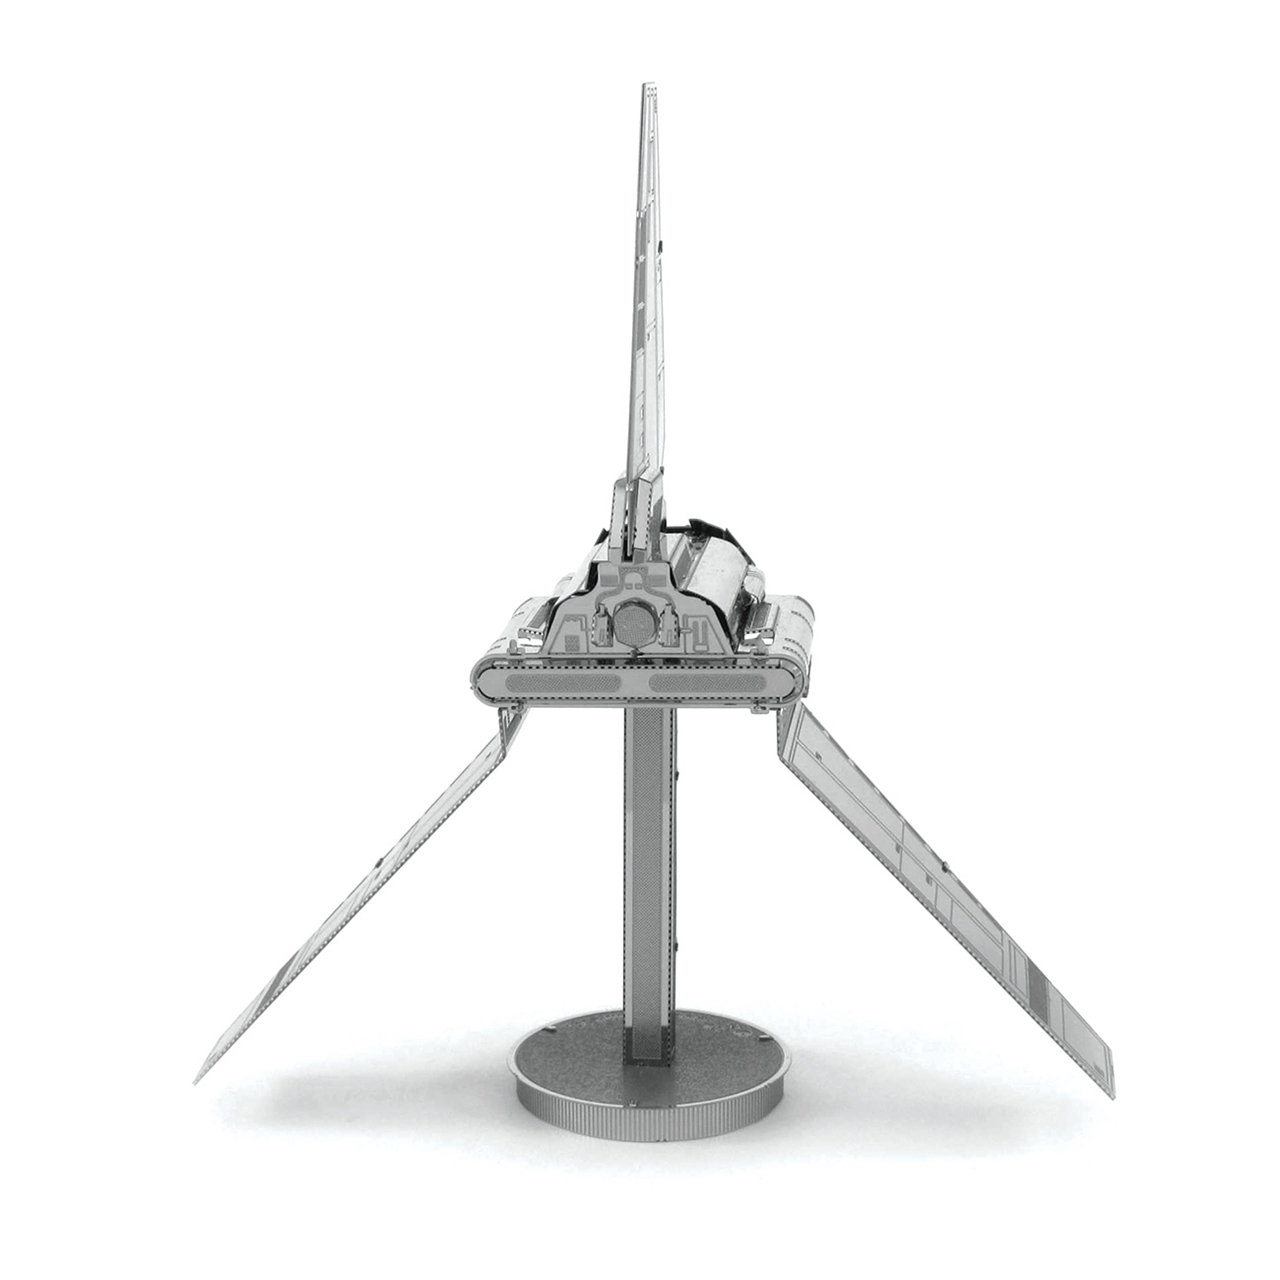 Fascinations Metal Earth 3D Laser Cut Steel Model Kit Star Wars Imperial Shuttle 